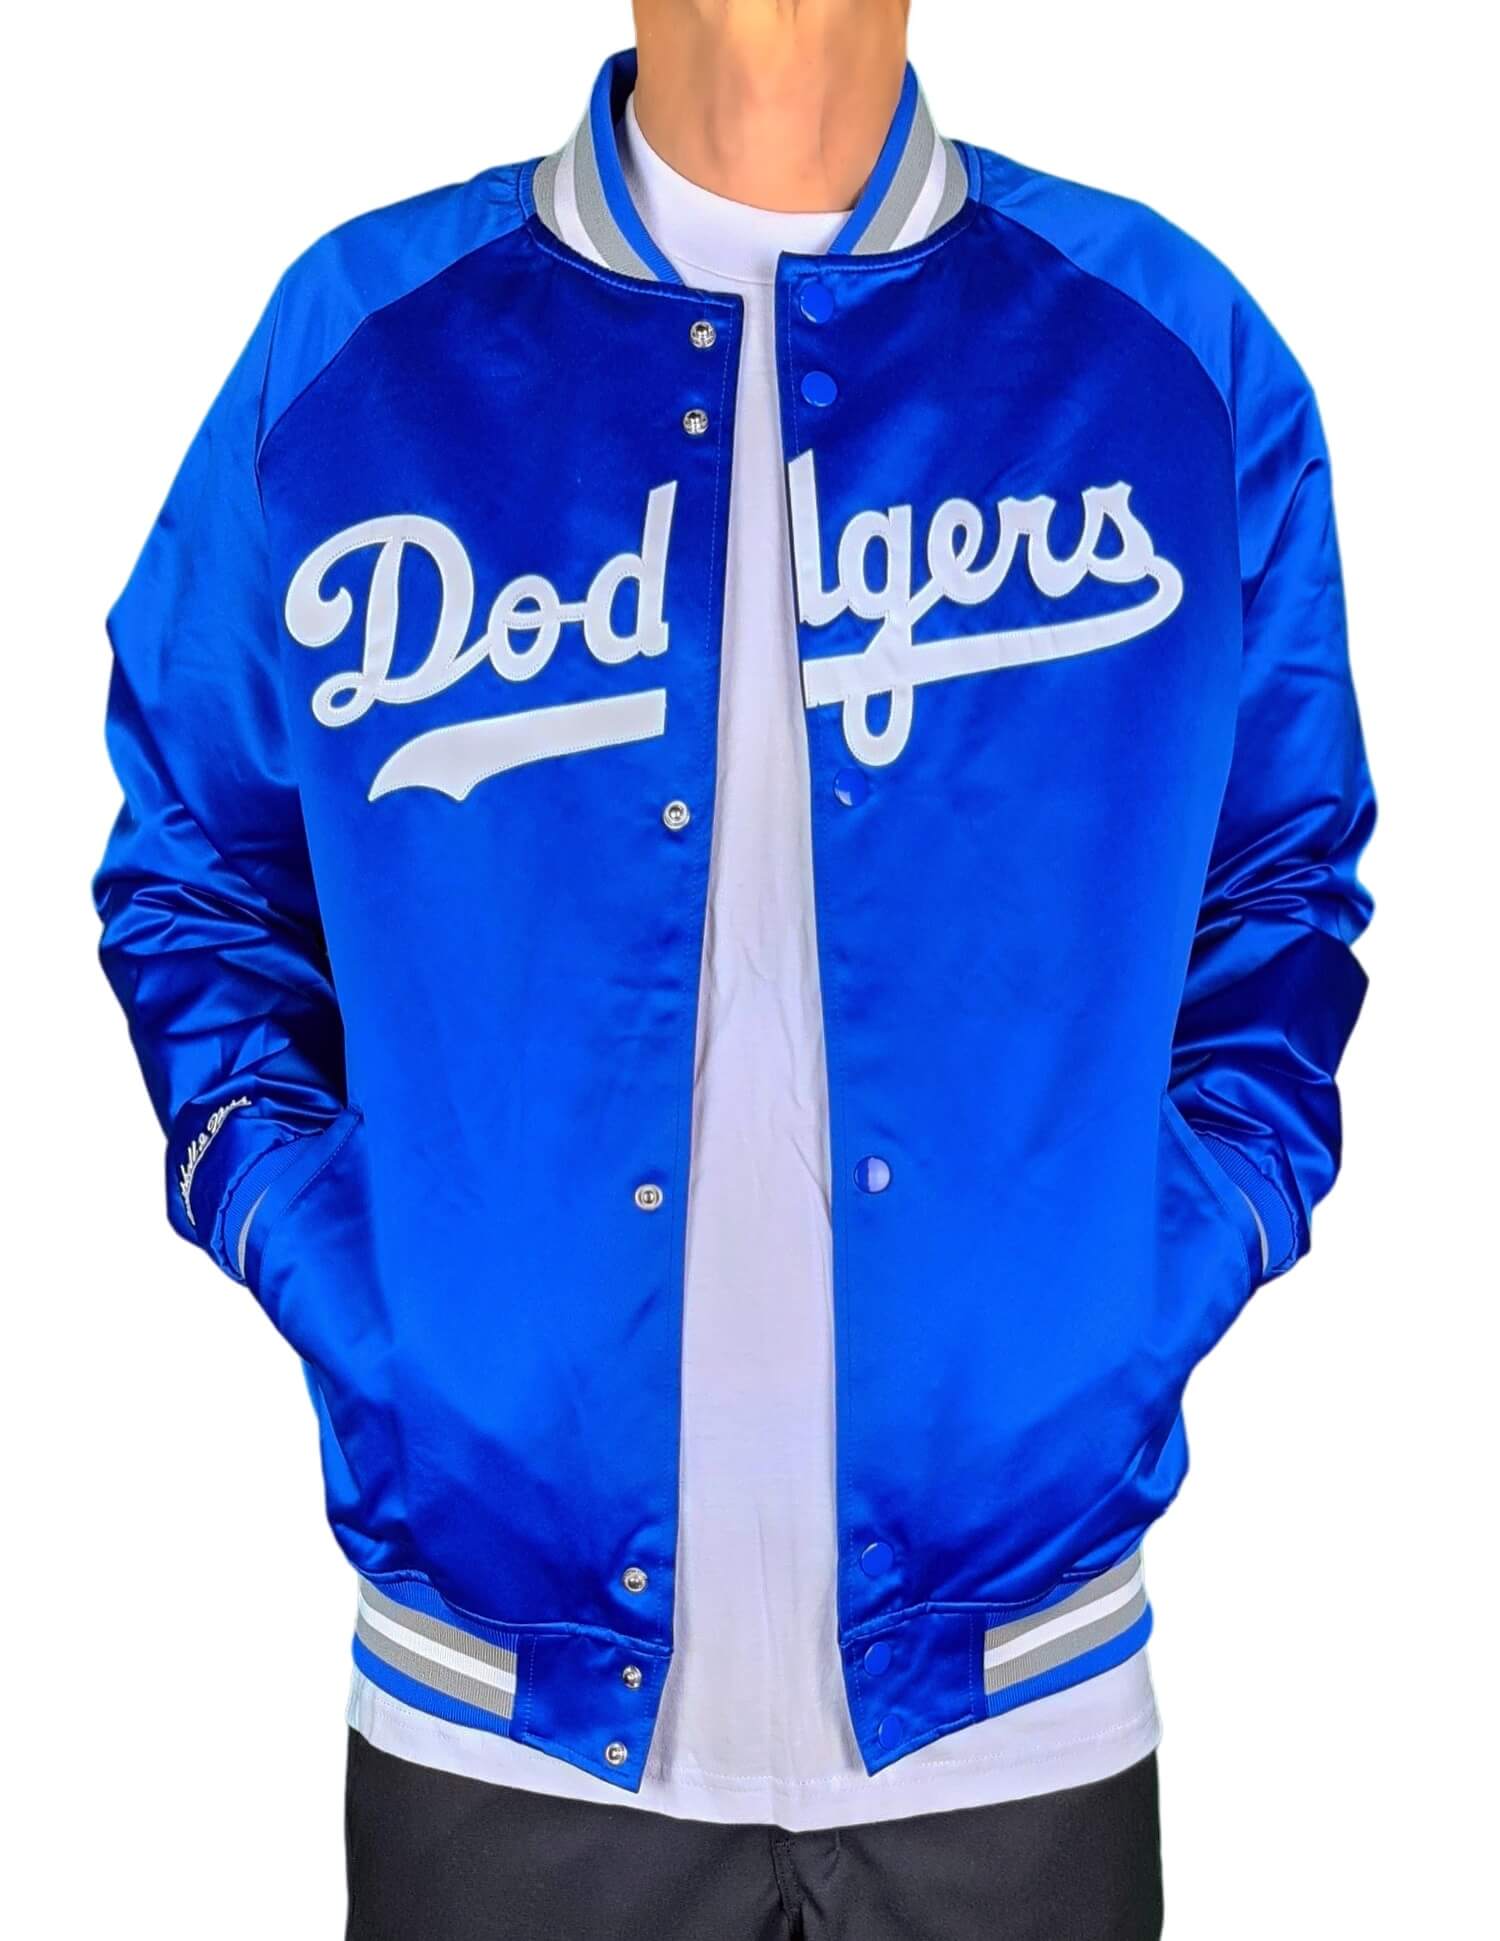 LA Dodgers Blended Blue and White Letterman Jacket